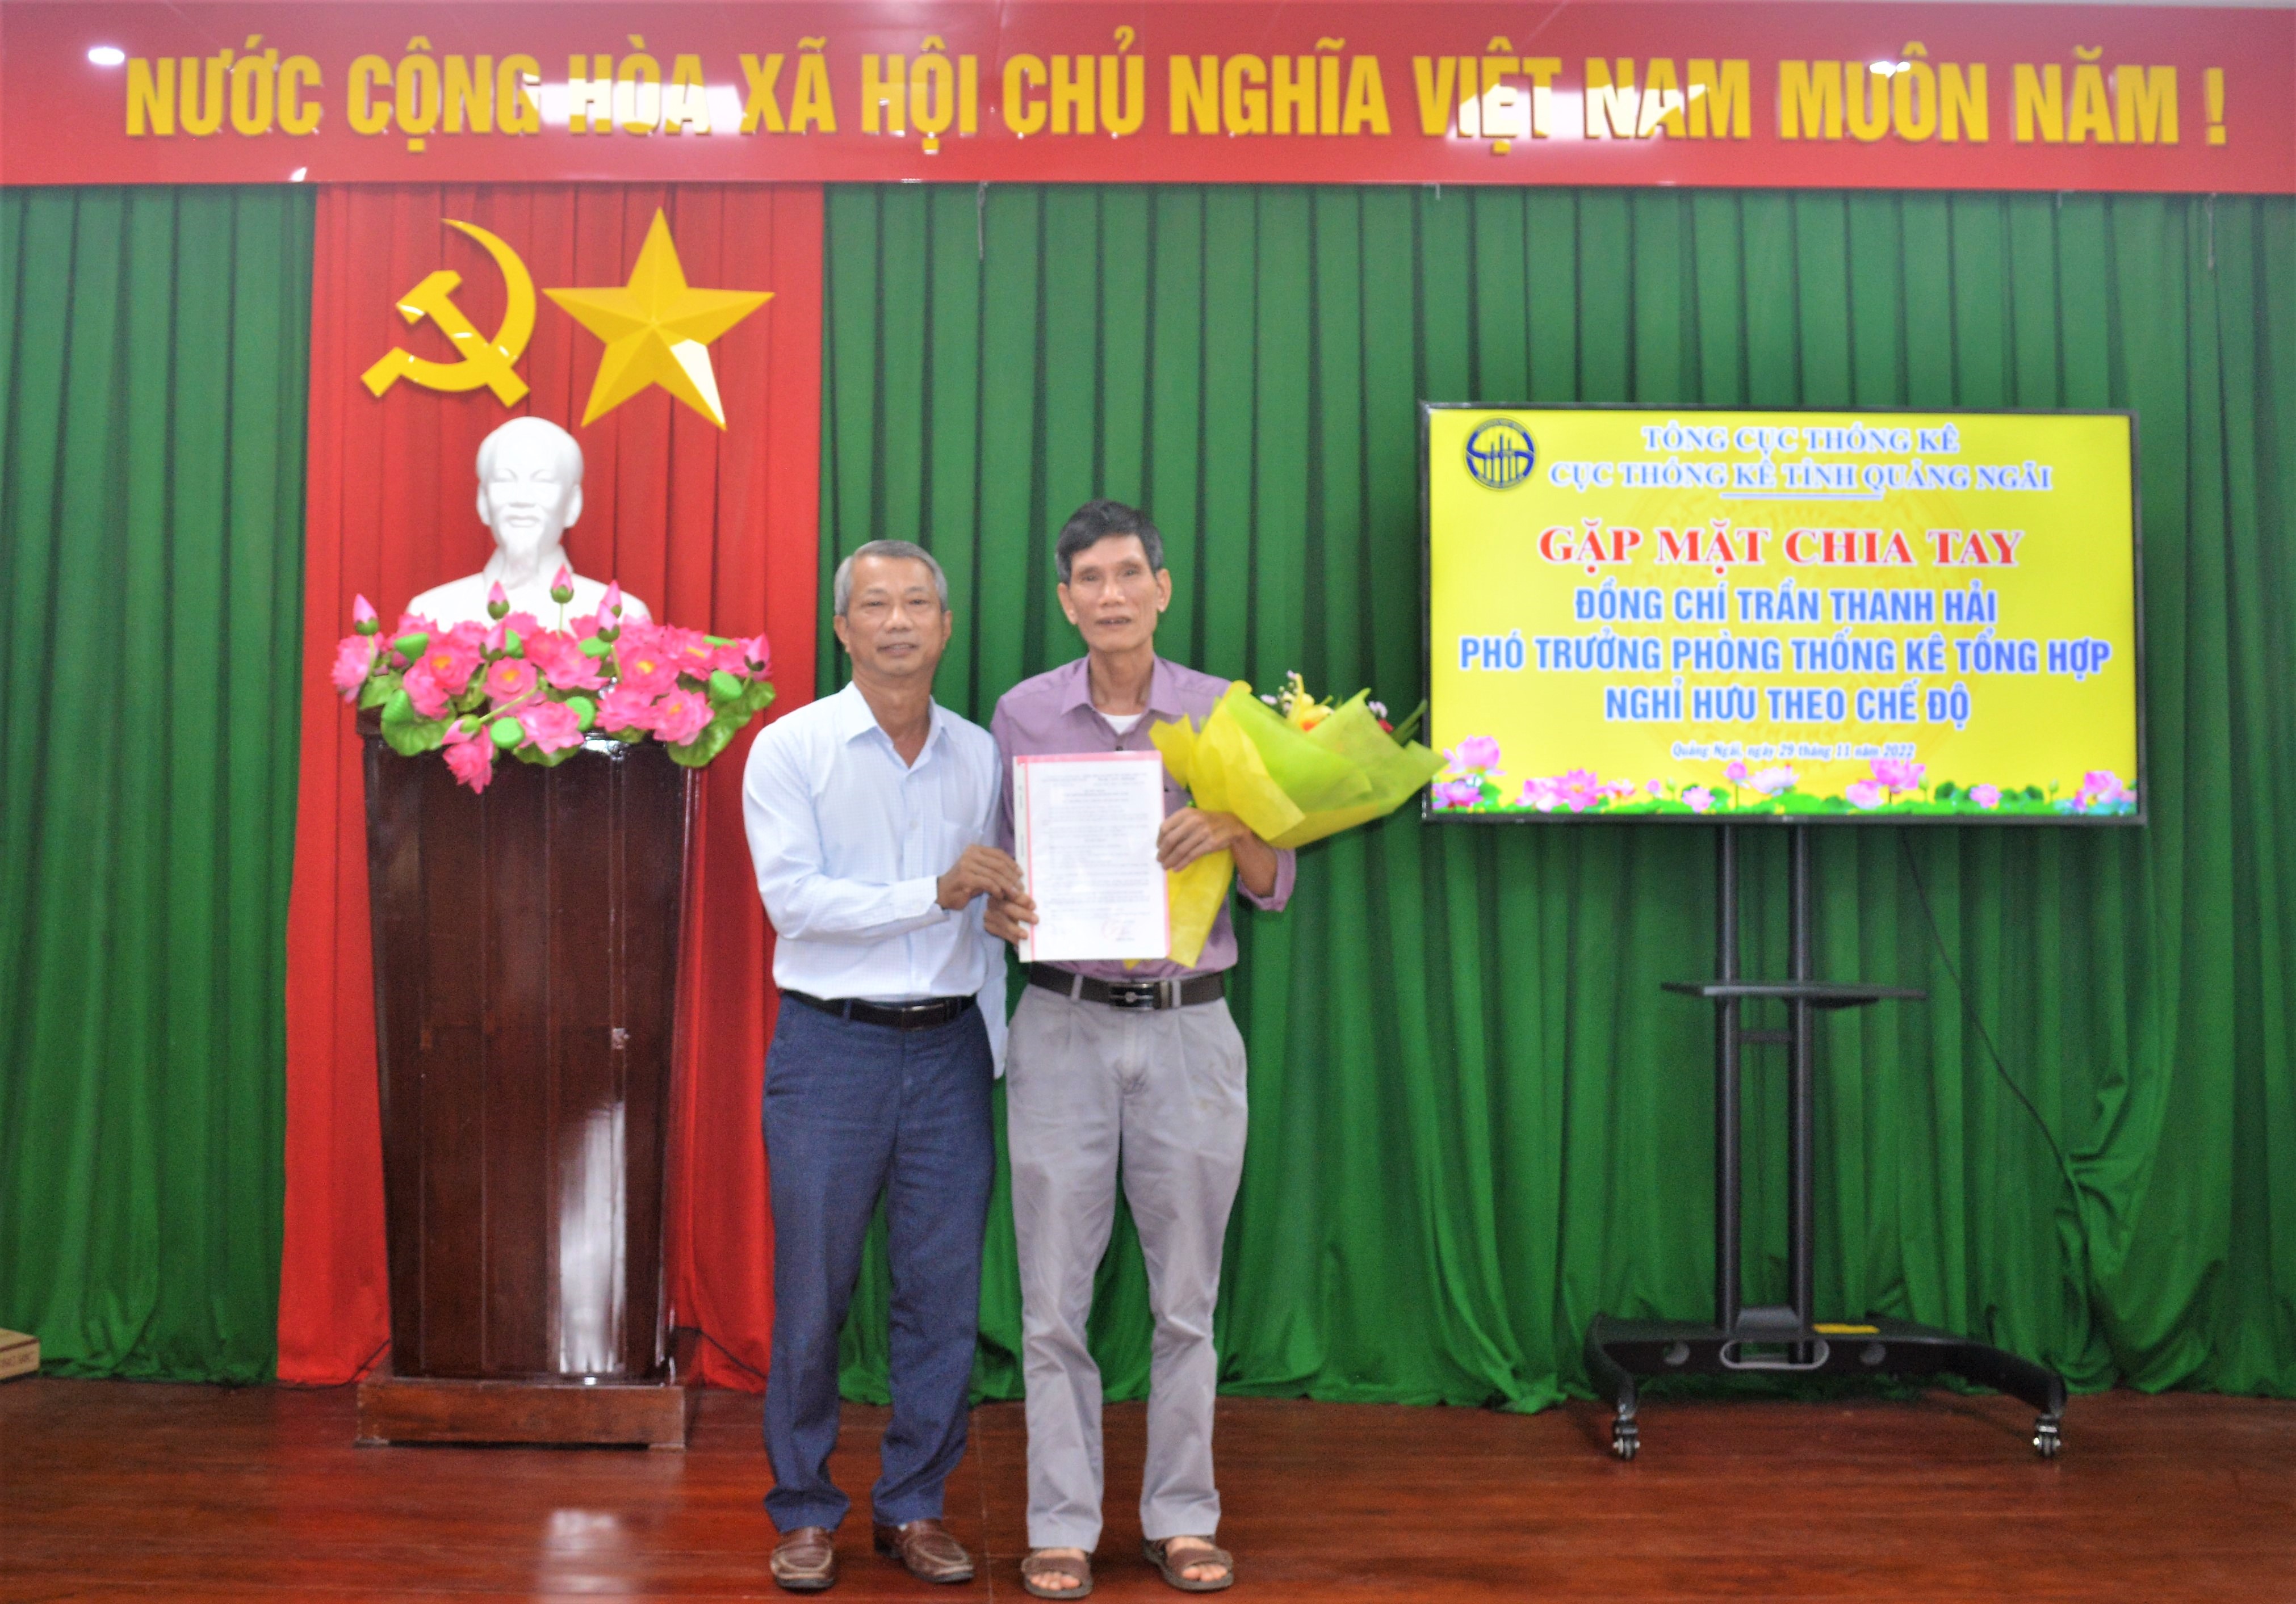 Cục Thống kê Quảng Ngãi tổ chức gặp mặt, chia tay công chức nghỉ hưu theo chế độ